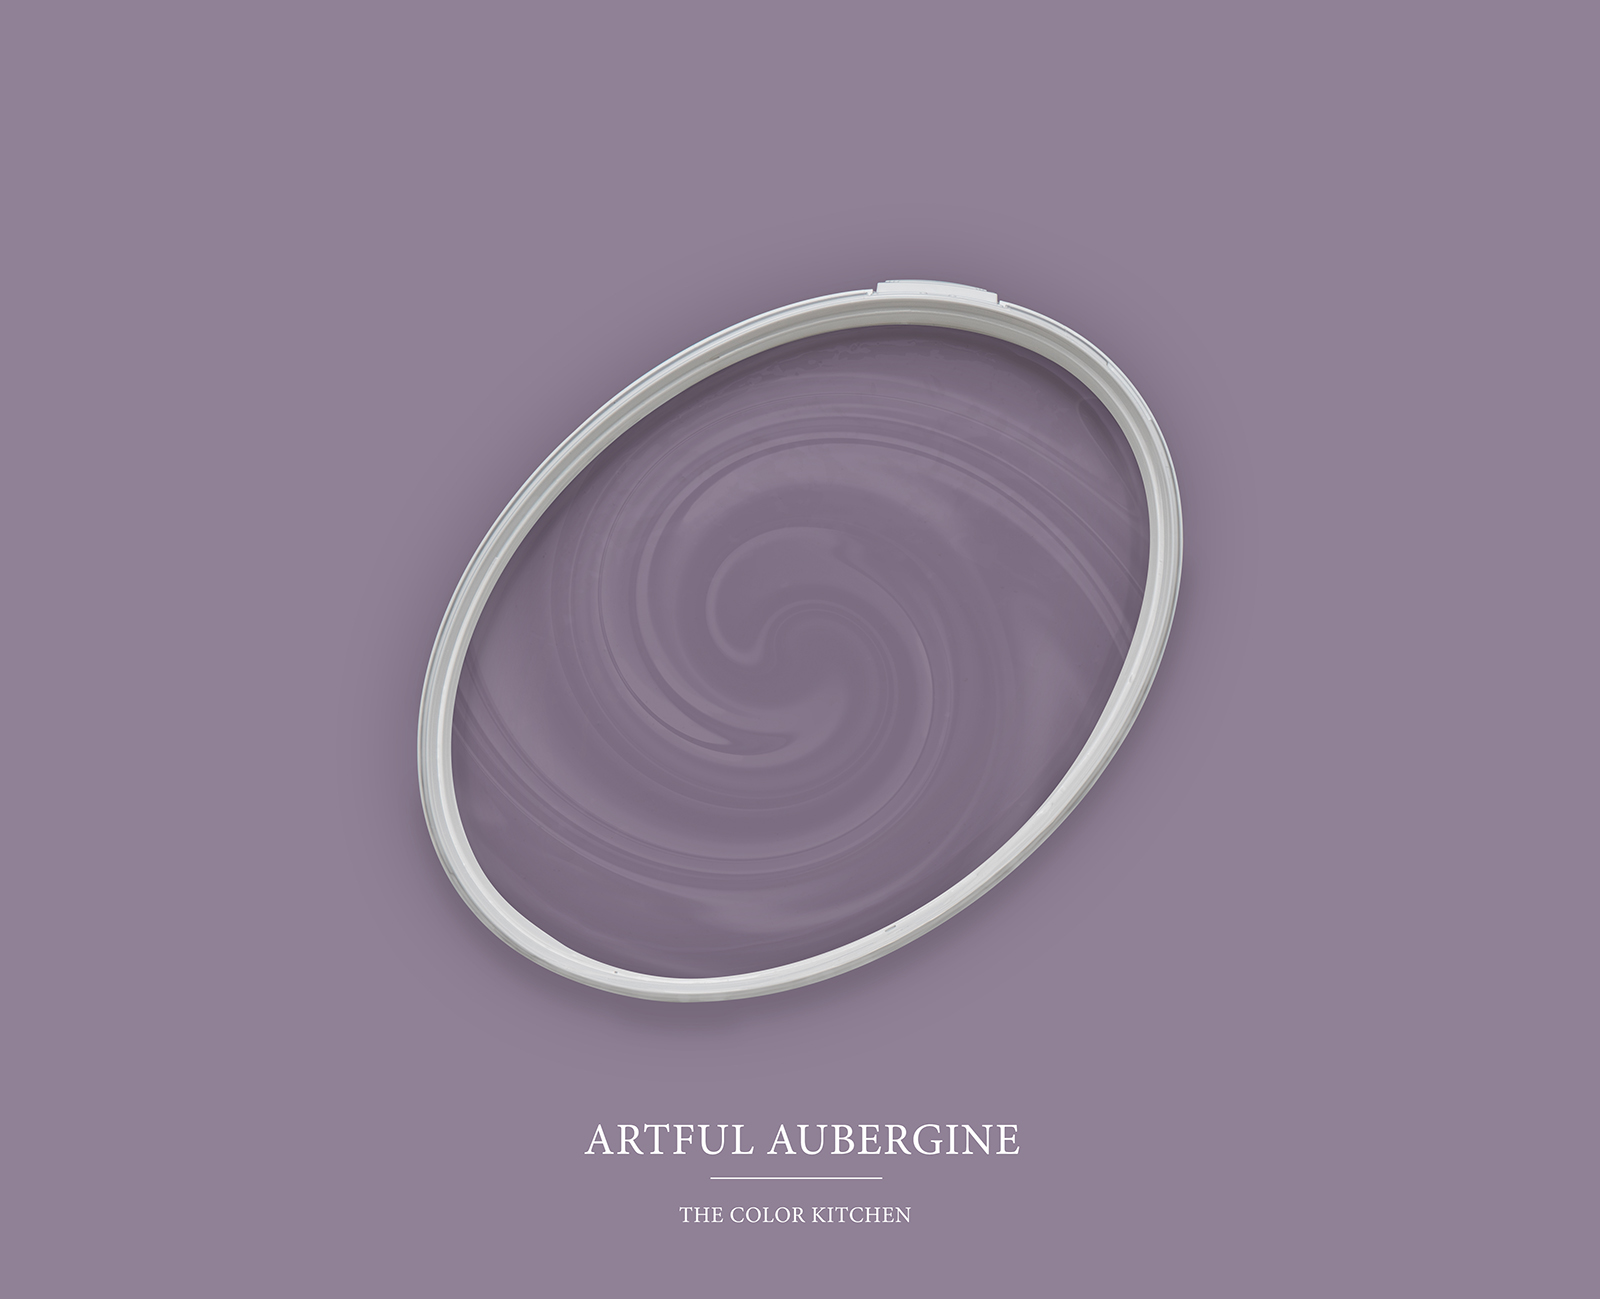 Wandfarbe in kräftigem Violett »Artful Aubergine« TCK2006 – 5 Liter
